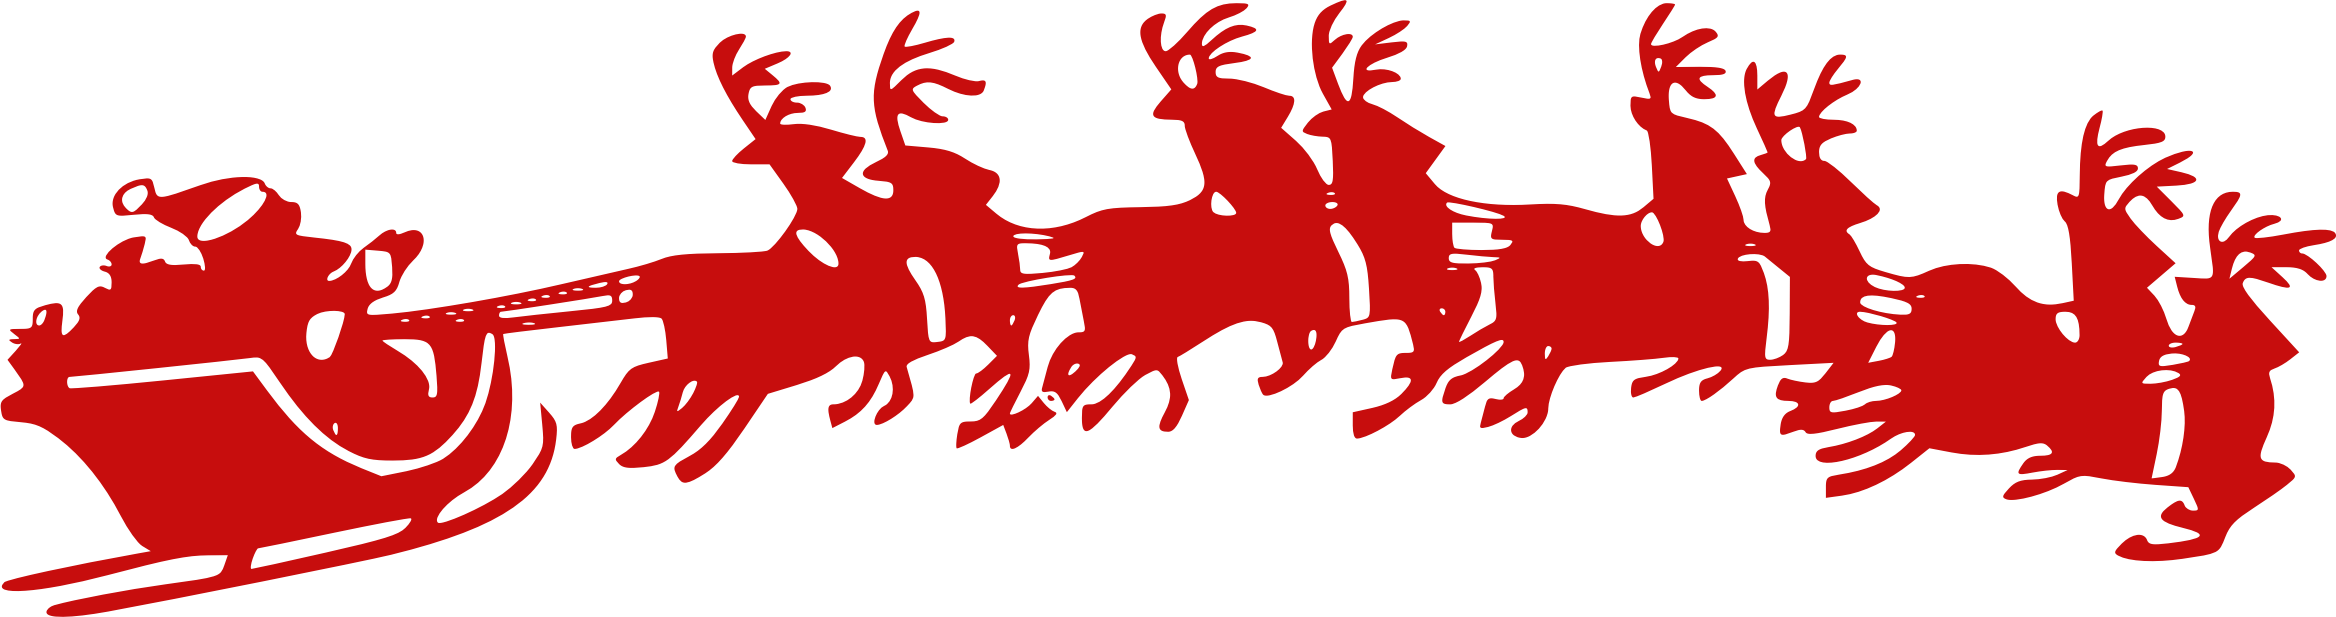 Santa Sleigh Clipart god jul alle sammen norwegian christmas vocabulary #32812